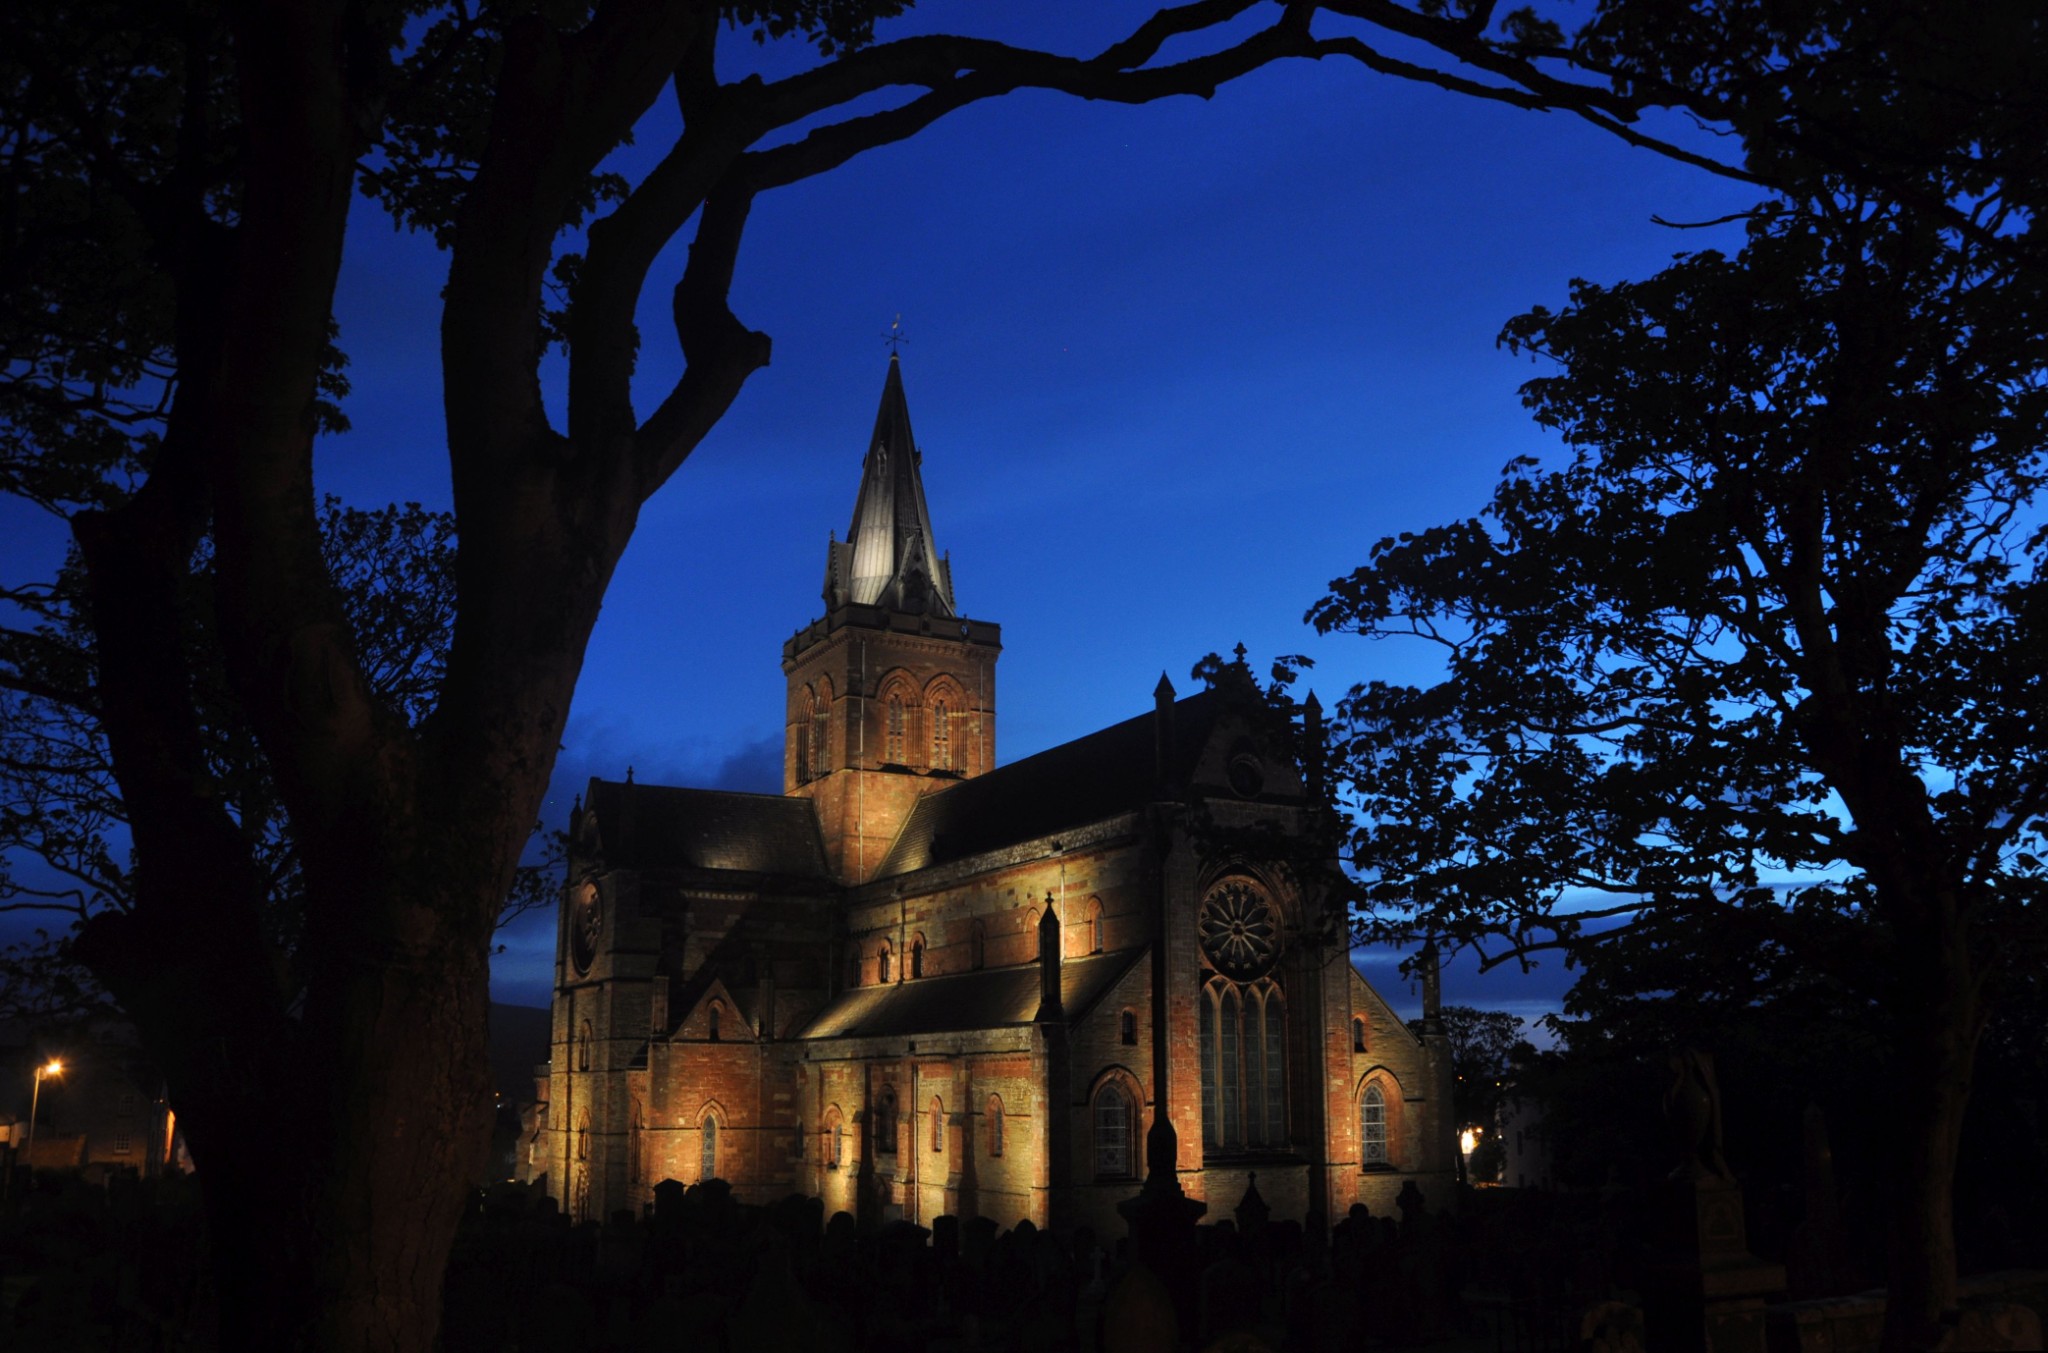 St Magnus Cathedral at dusk - image by Leslie Burgher